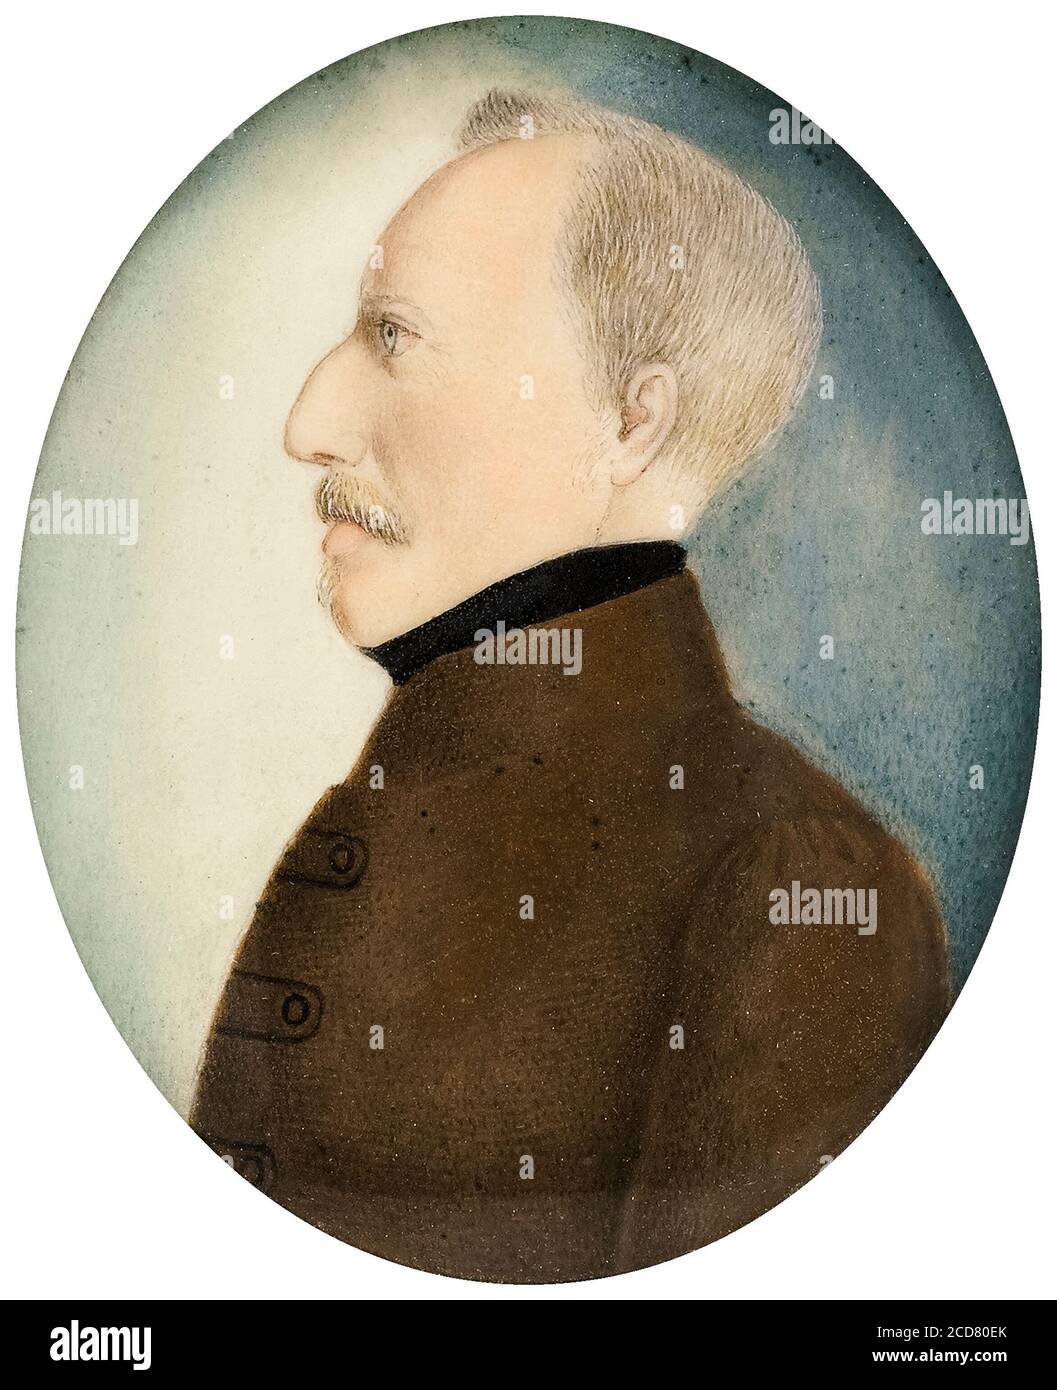 Colonel Gustafsson, ancien Gustav IV Adolf (1778-1837), roi de Suède, portrait miniature vers 1830 Banque D'Images